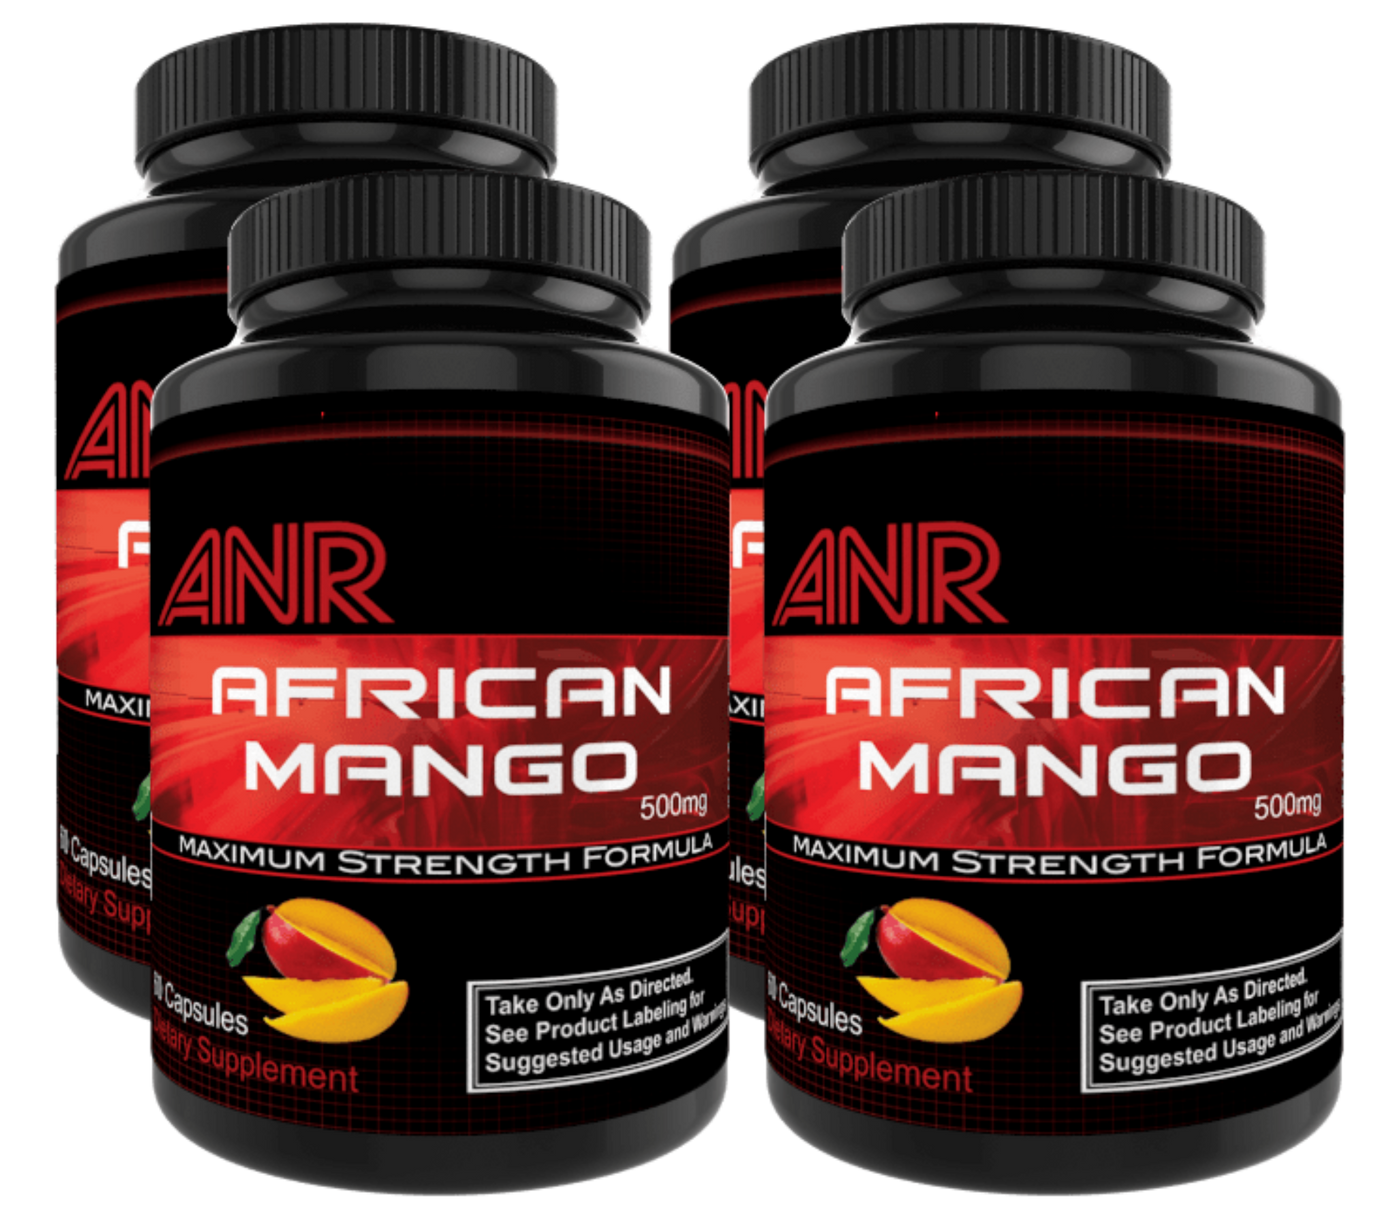 African Mango 2.0 Buy 3 Get 1 FREE - TeamANR